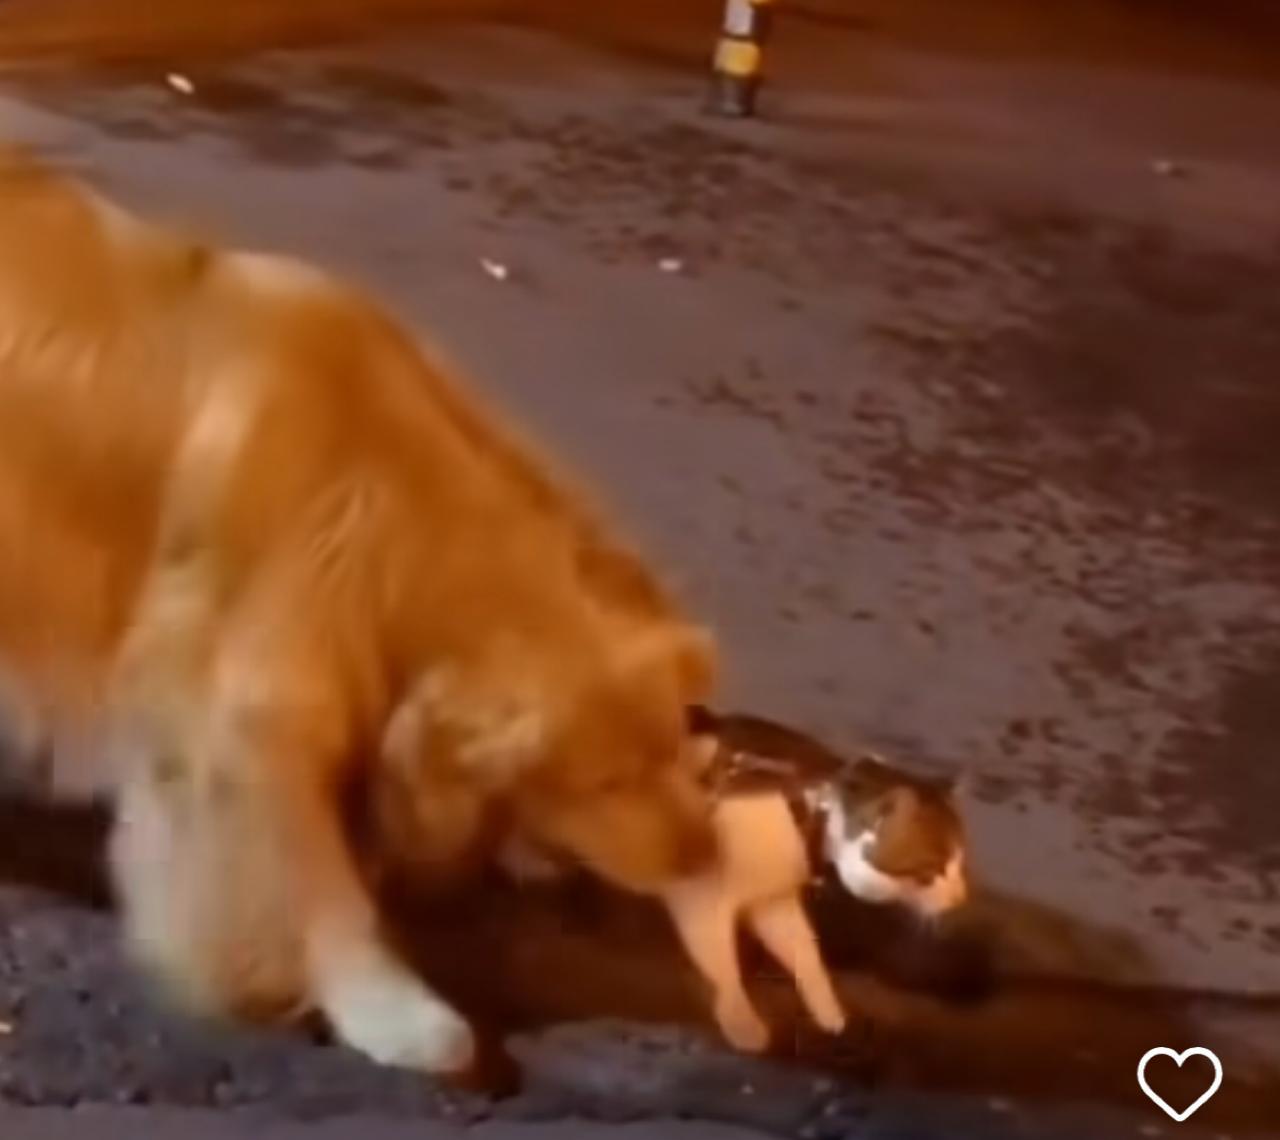 Golden demonstra inteligência ao proteger amigo felino de confronto na rua: amizade interespécies